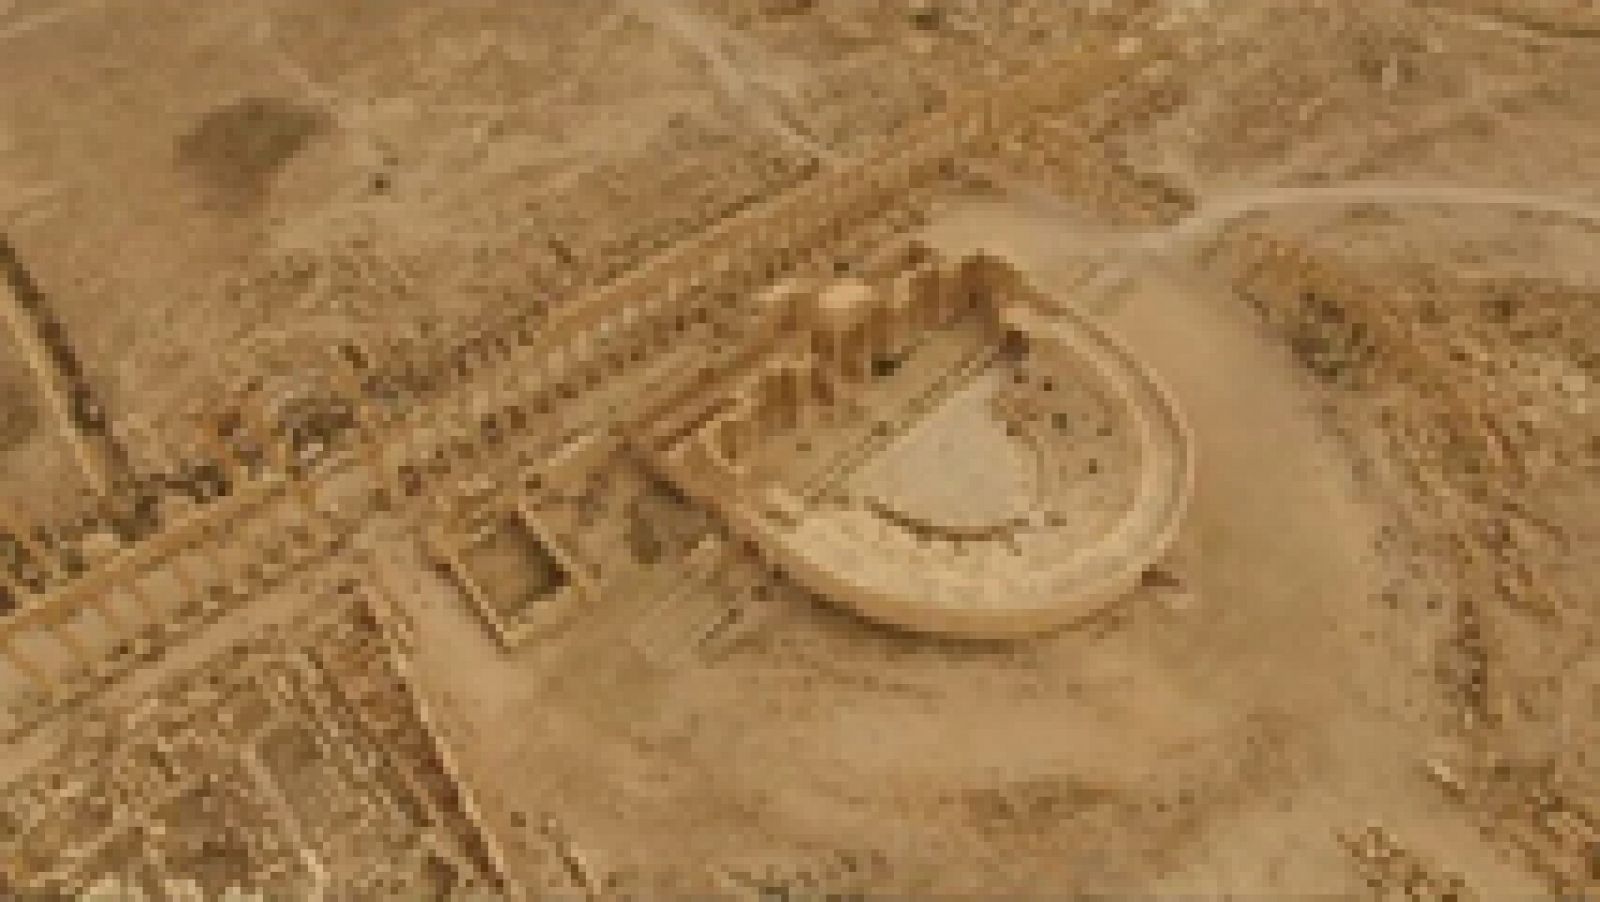 Lo que queda de las ruinas de Palmira, vista aérea tras su reconquista por el ejército sirio